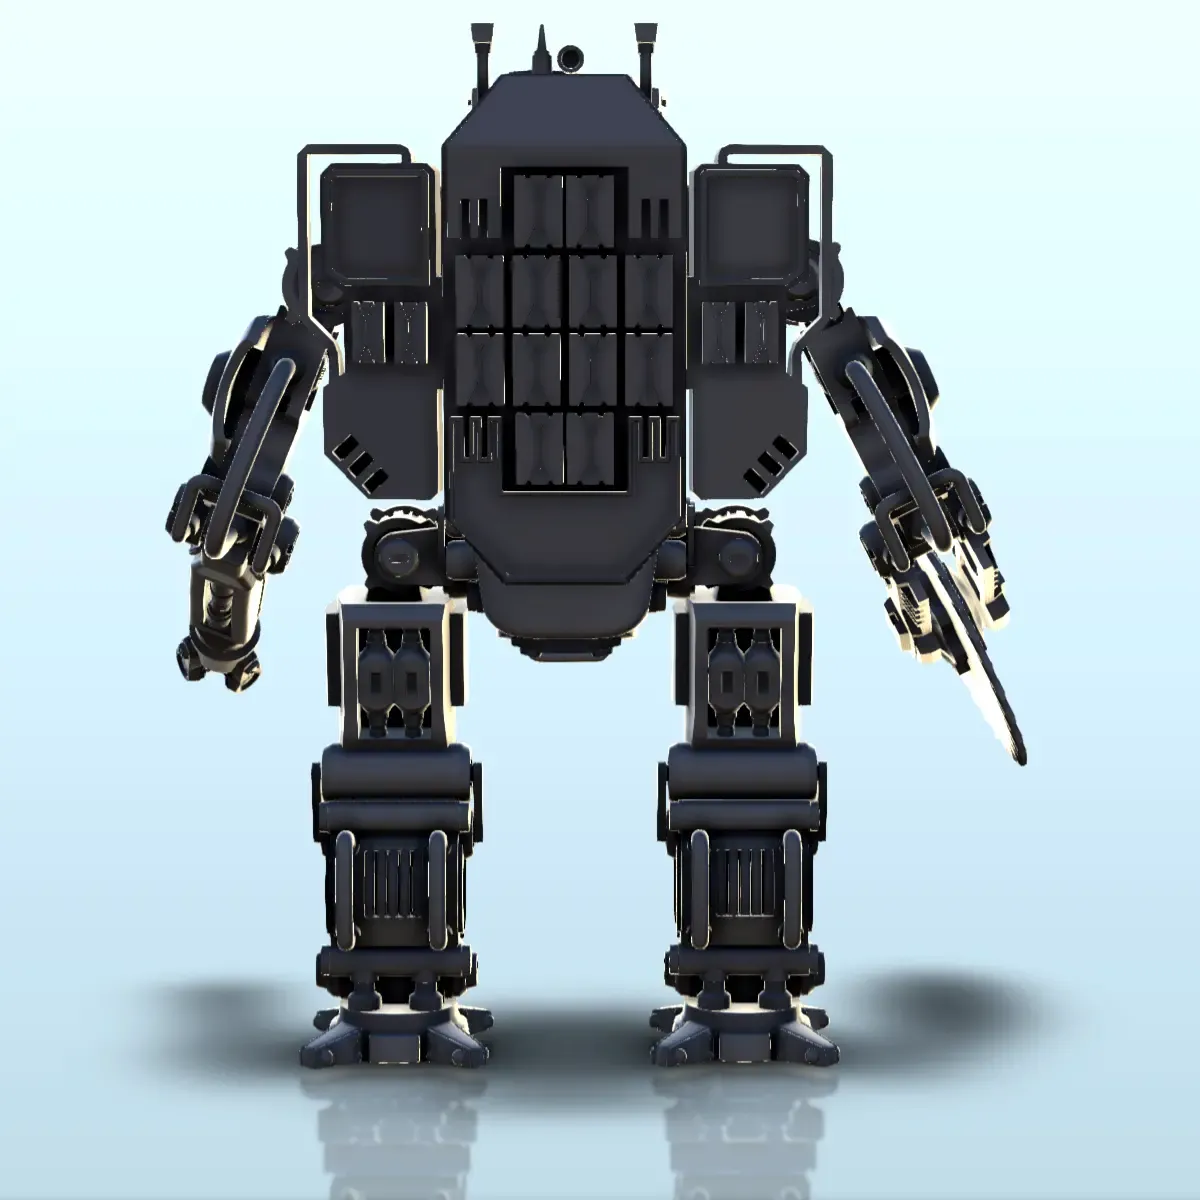 Zihaldin combat robot (23) - sci-fi science fiction future 4